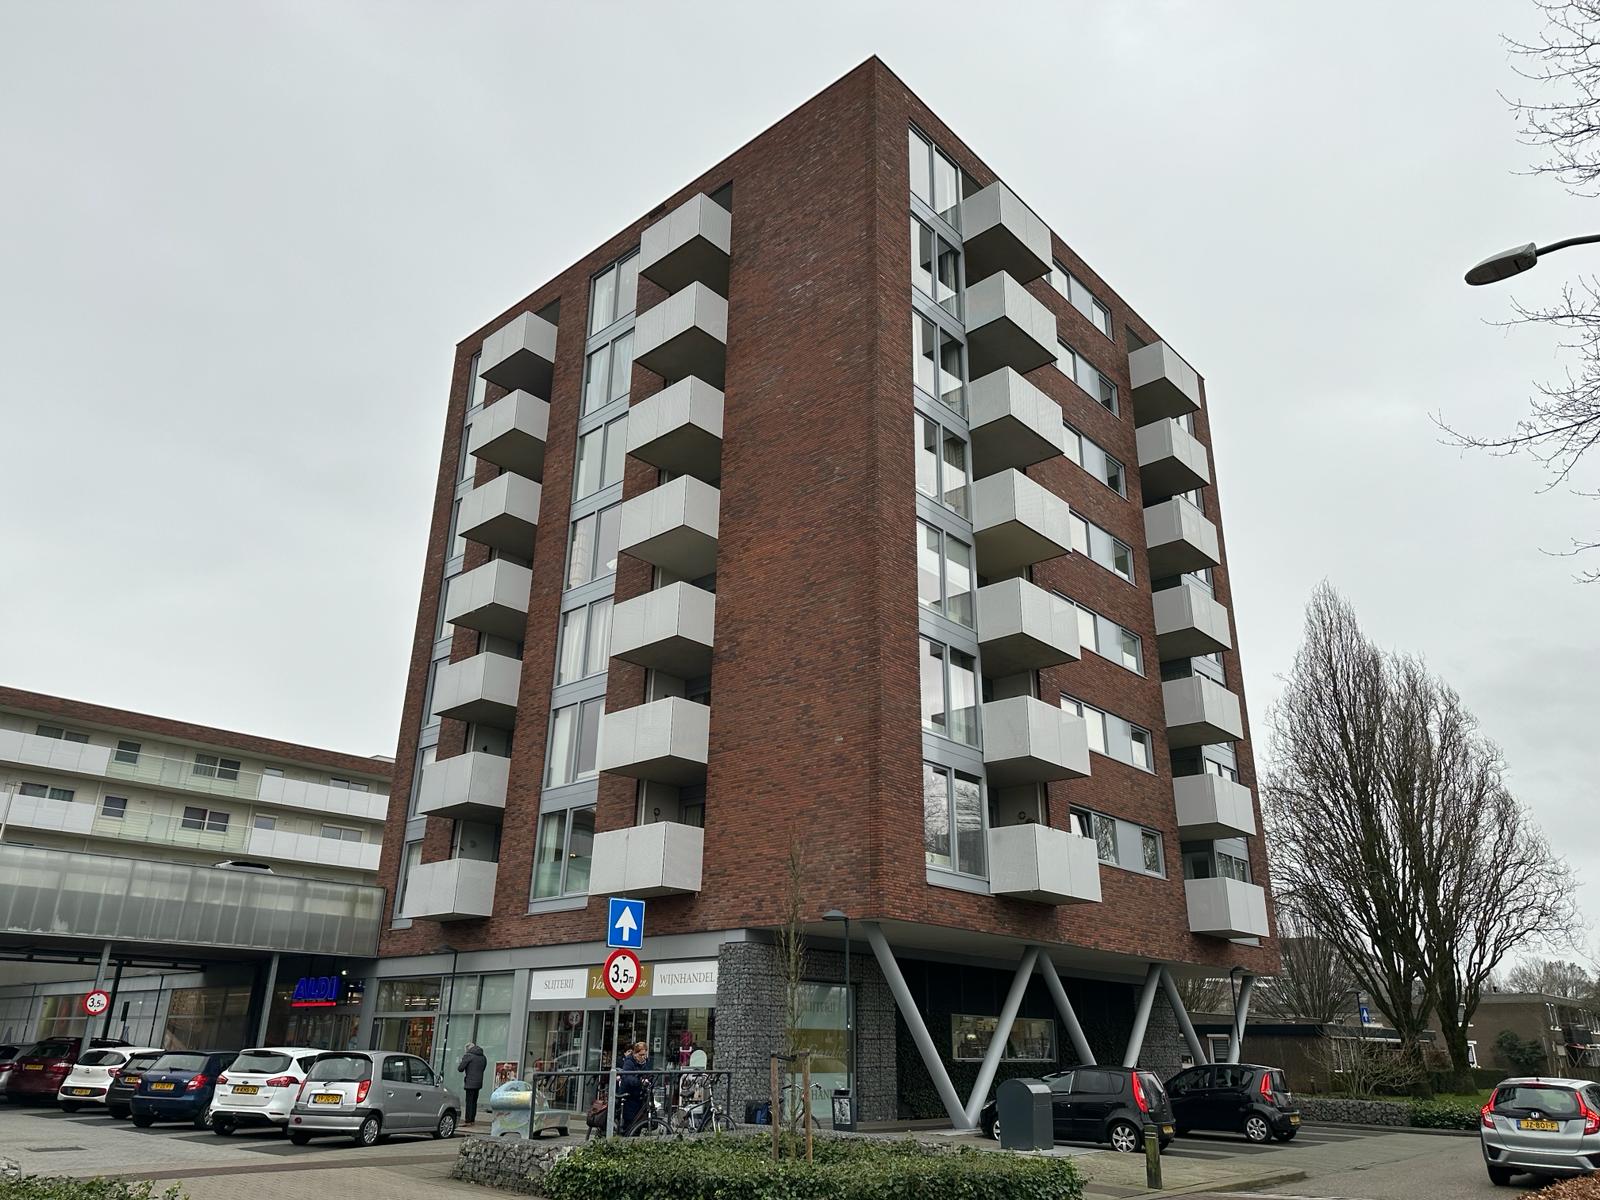 Bekijk foto 1/5 van apartment in Veldhoven